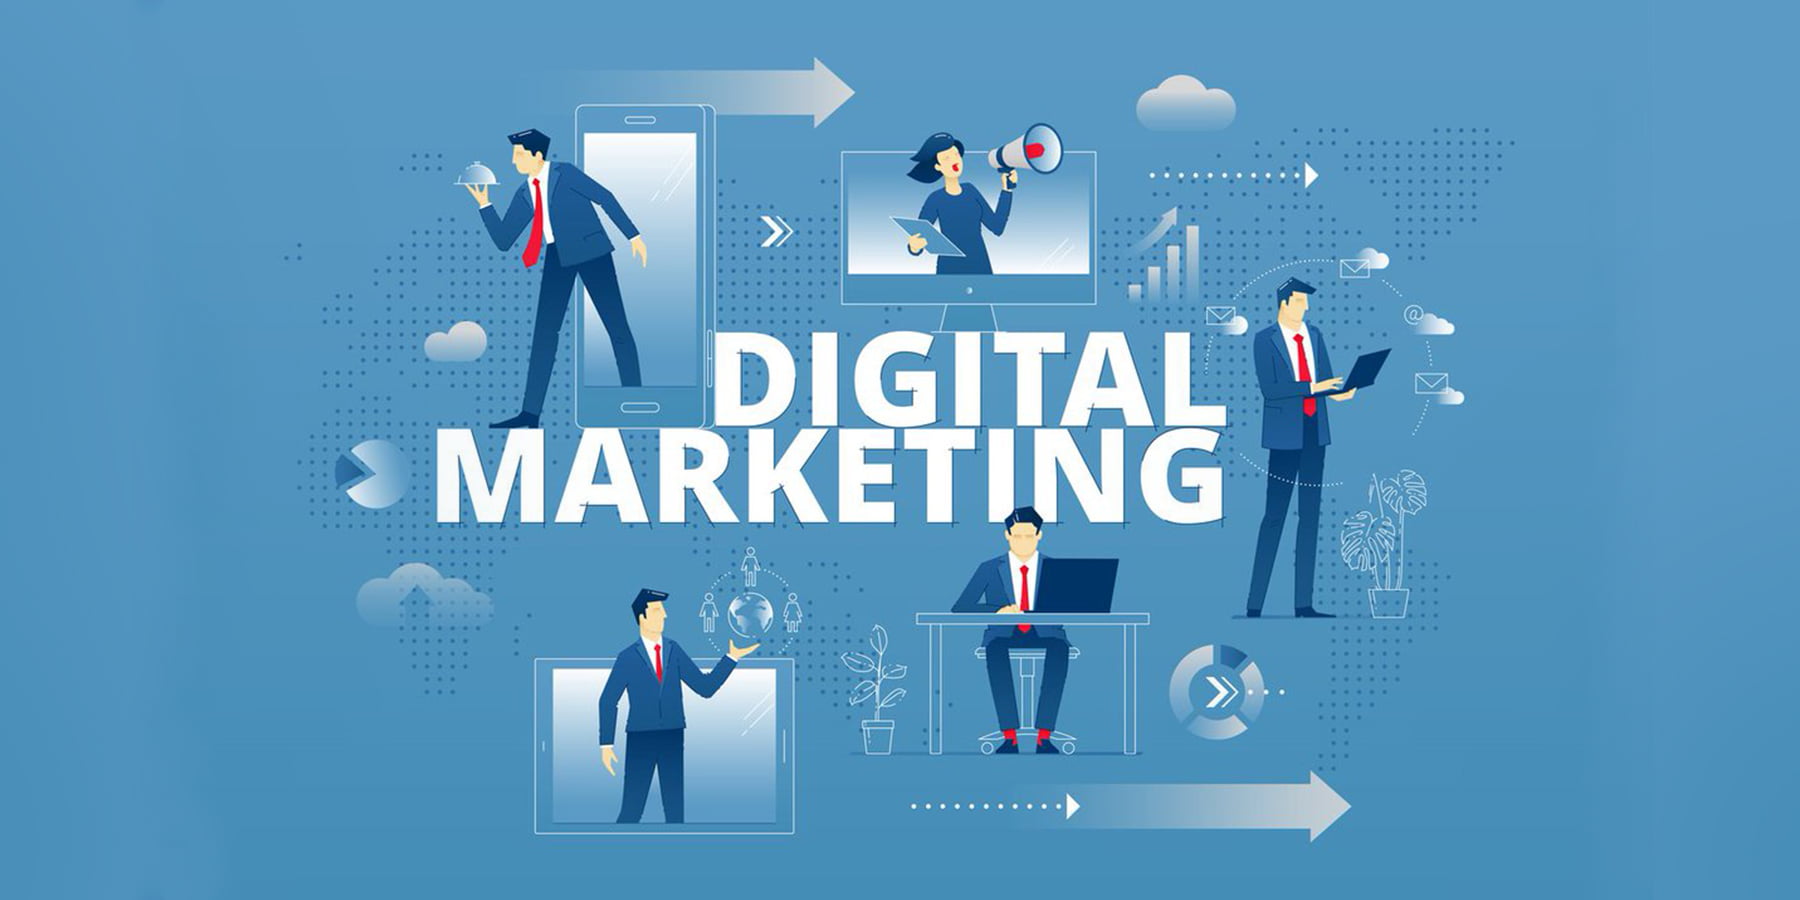 Lương nhân viên digital marketing có thể lên tới 30 triệu đồng/tháng mà vẫn thiếu người